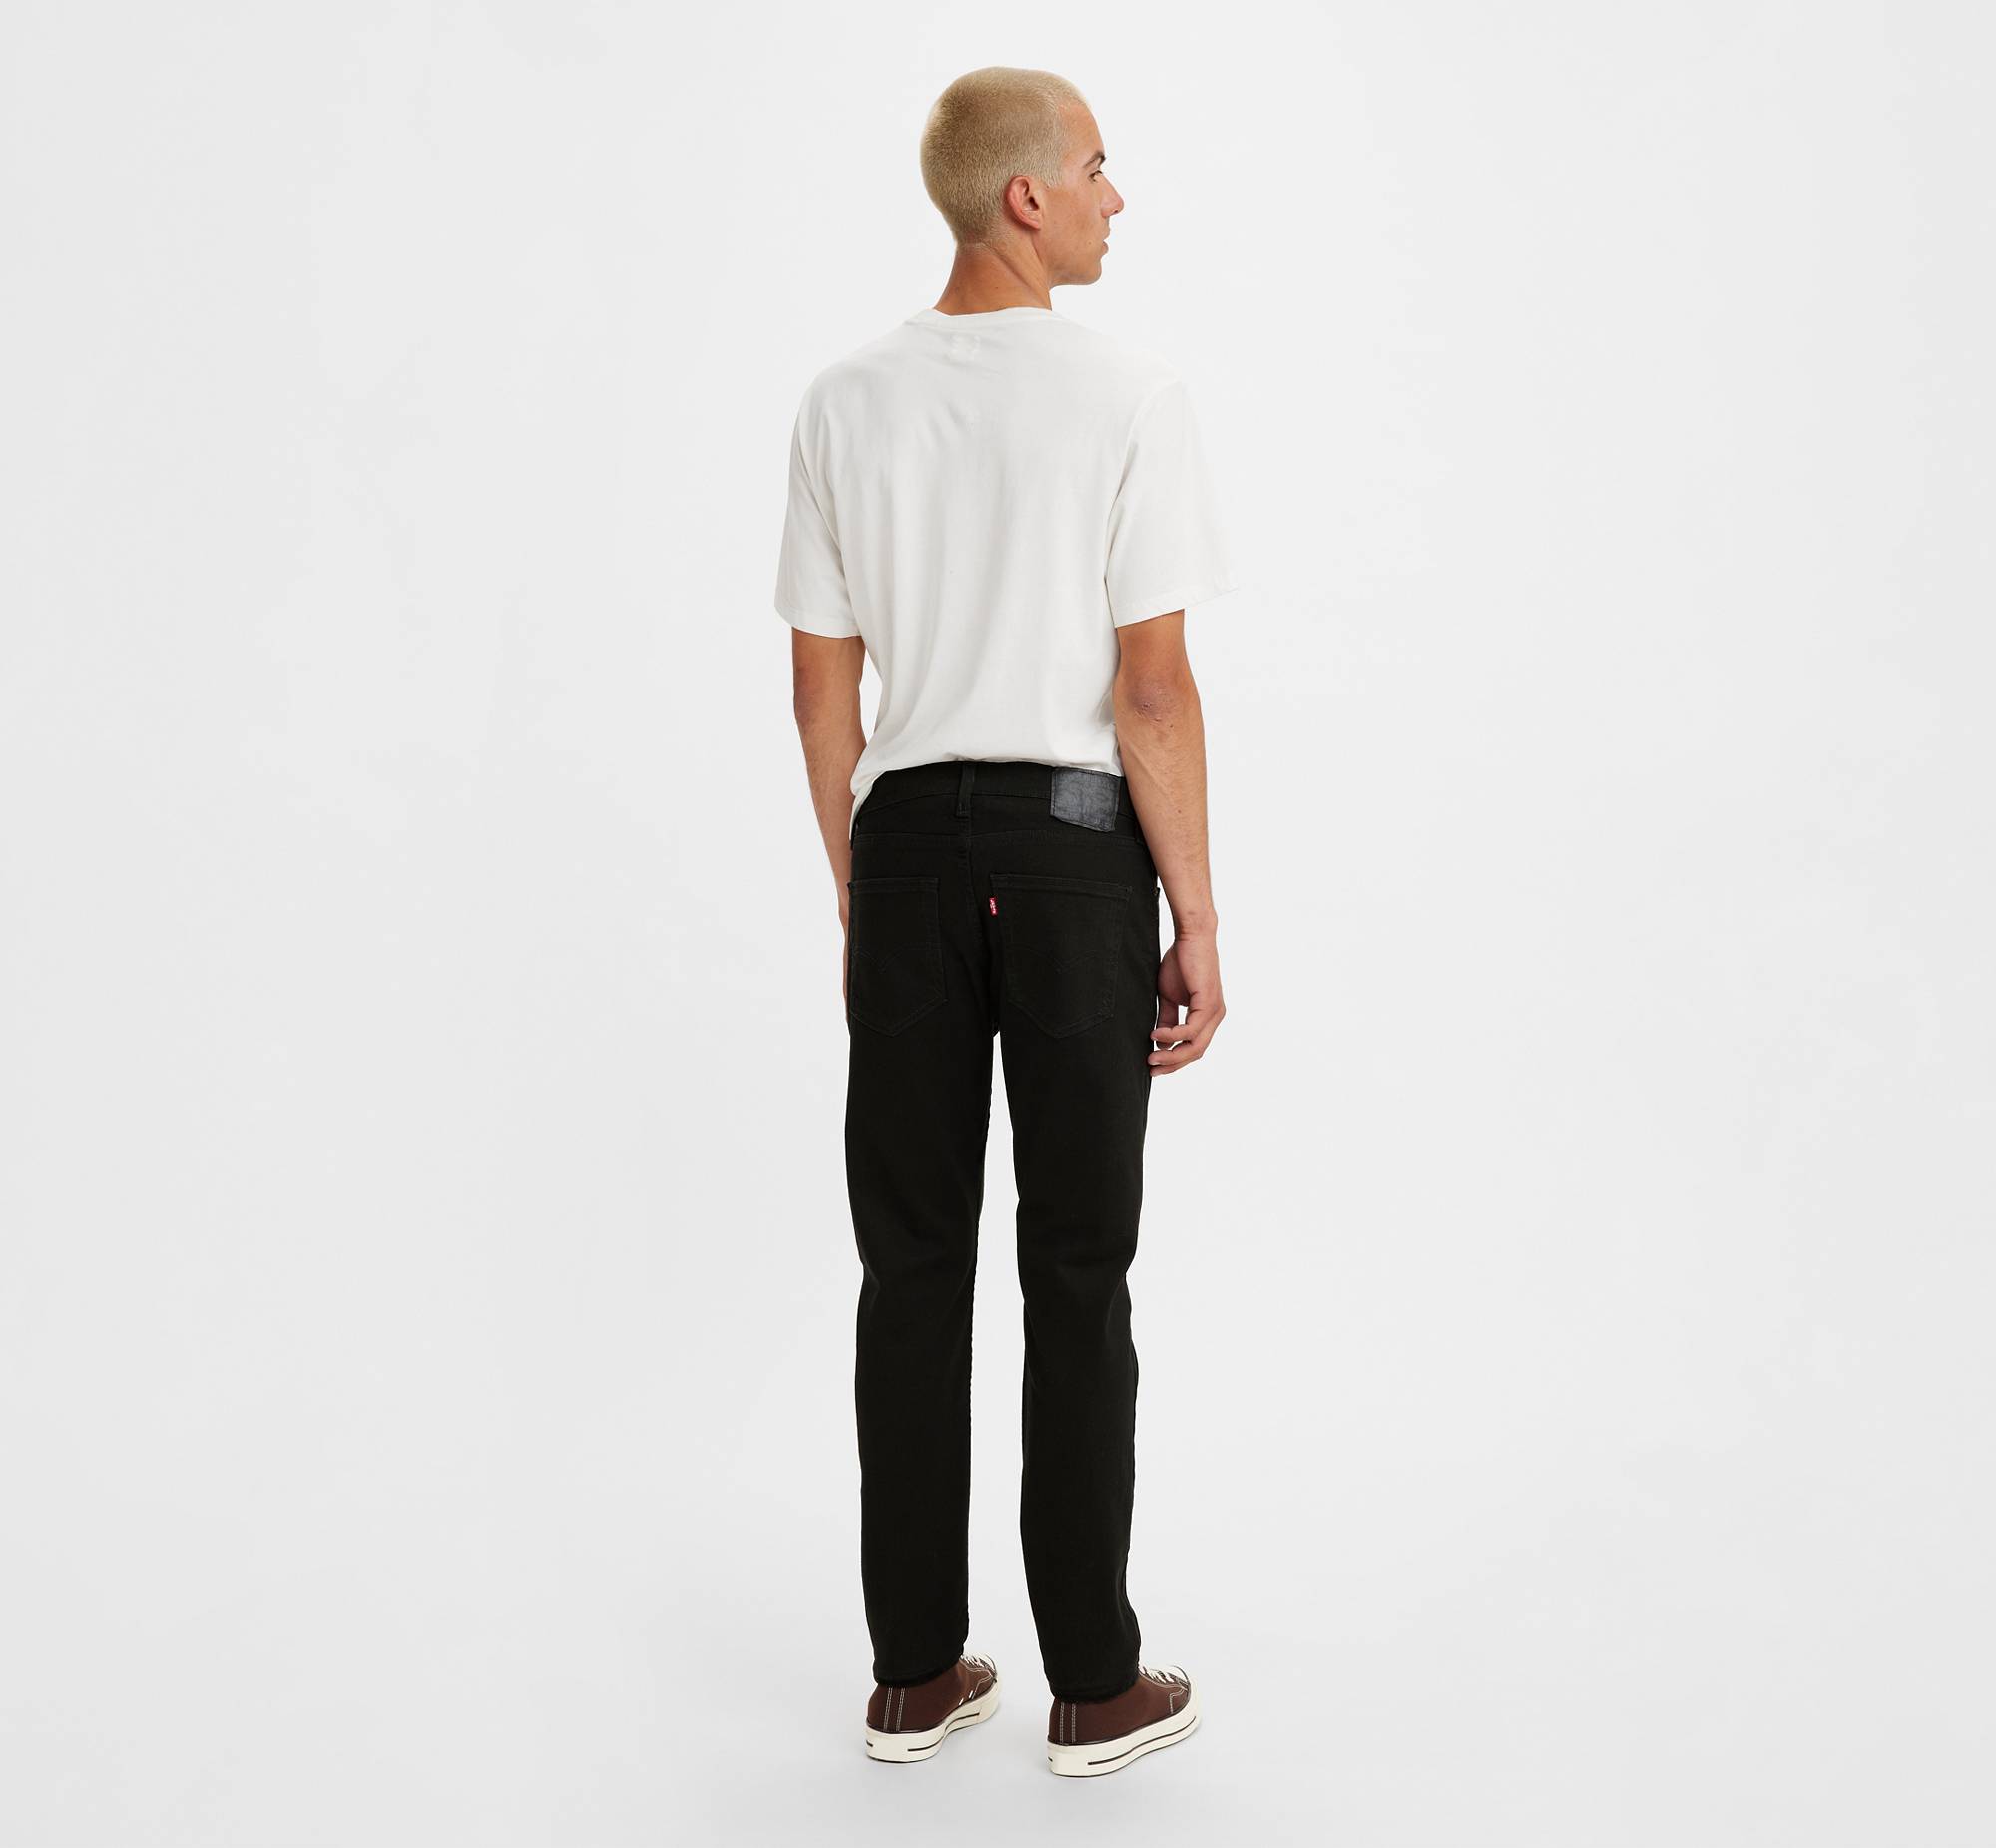 512™ Slim Taper Jeans 3